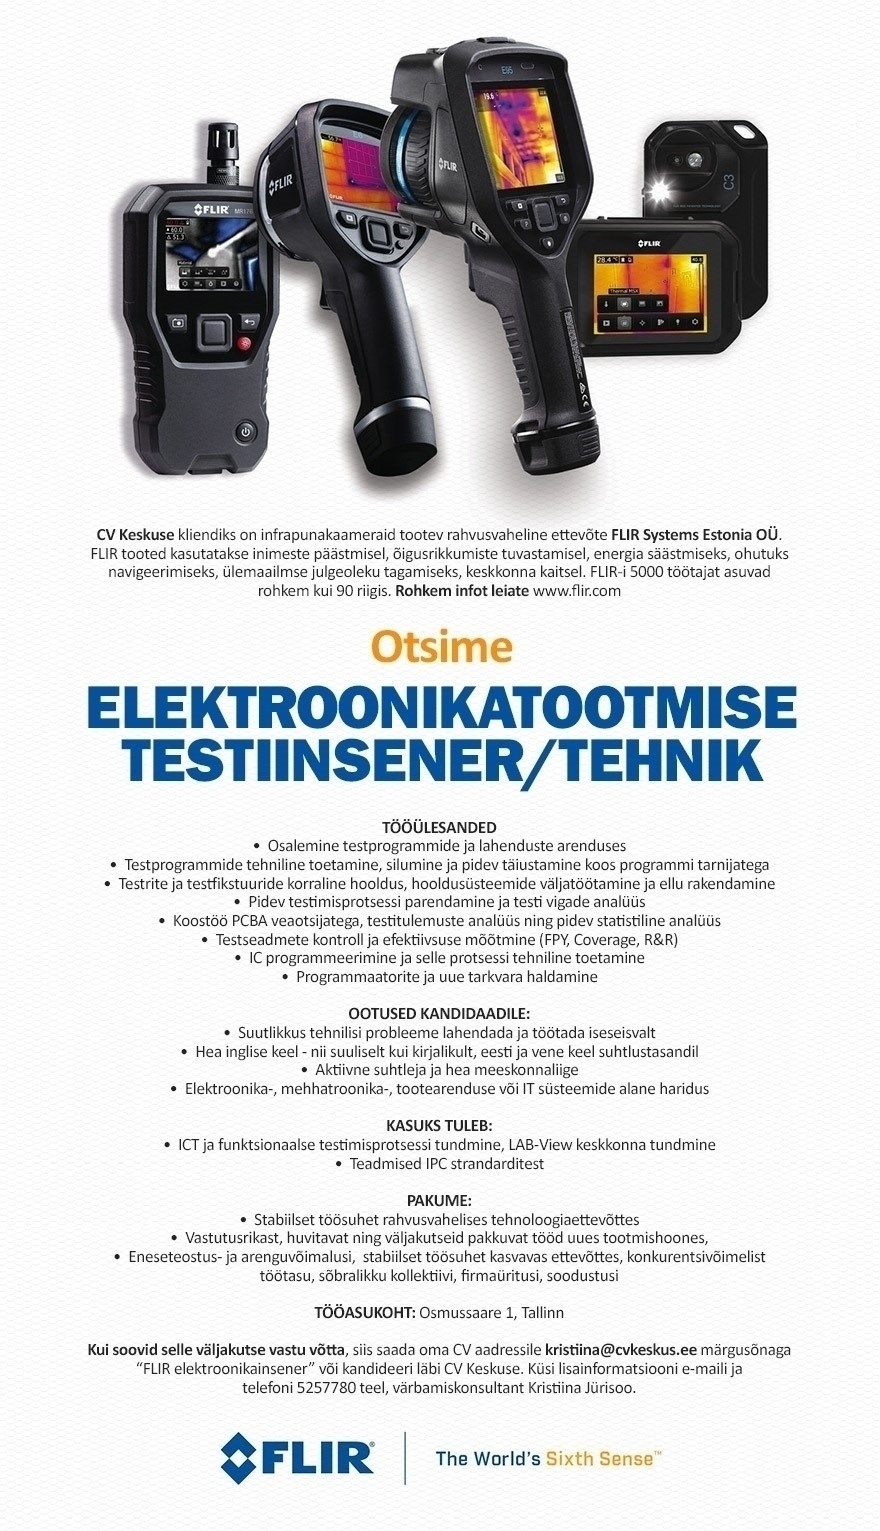 FLIR Systems Estonia OÜ Elektroonikatootmise Testiinsener/tehnik